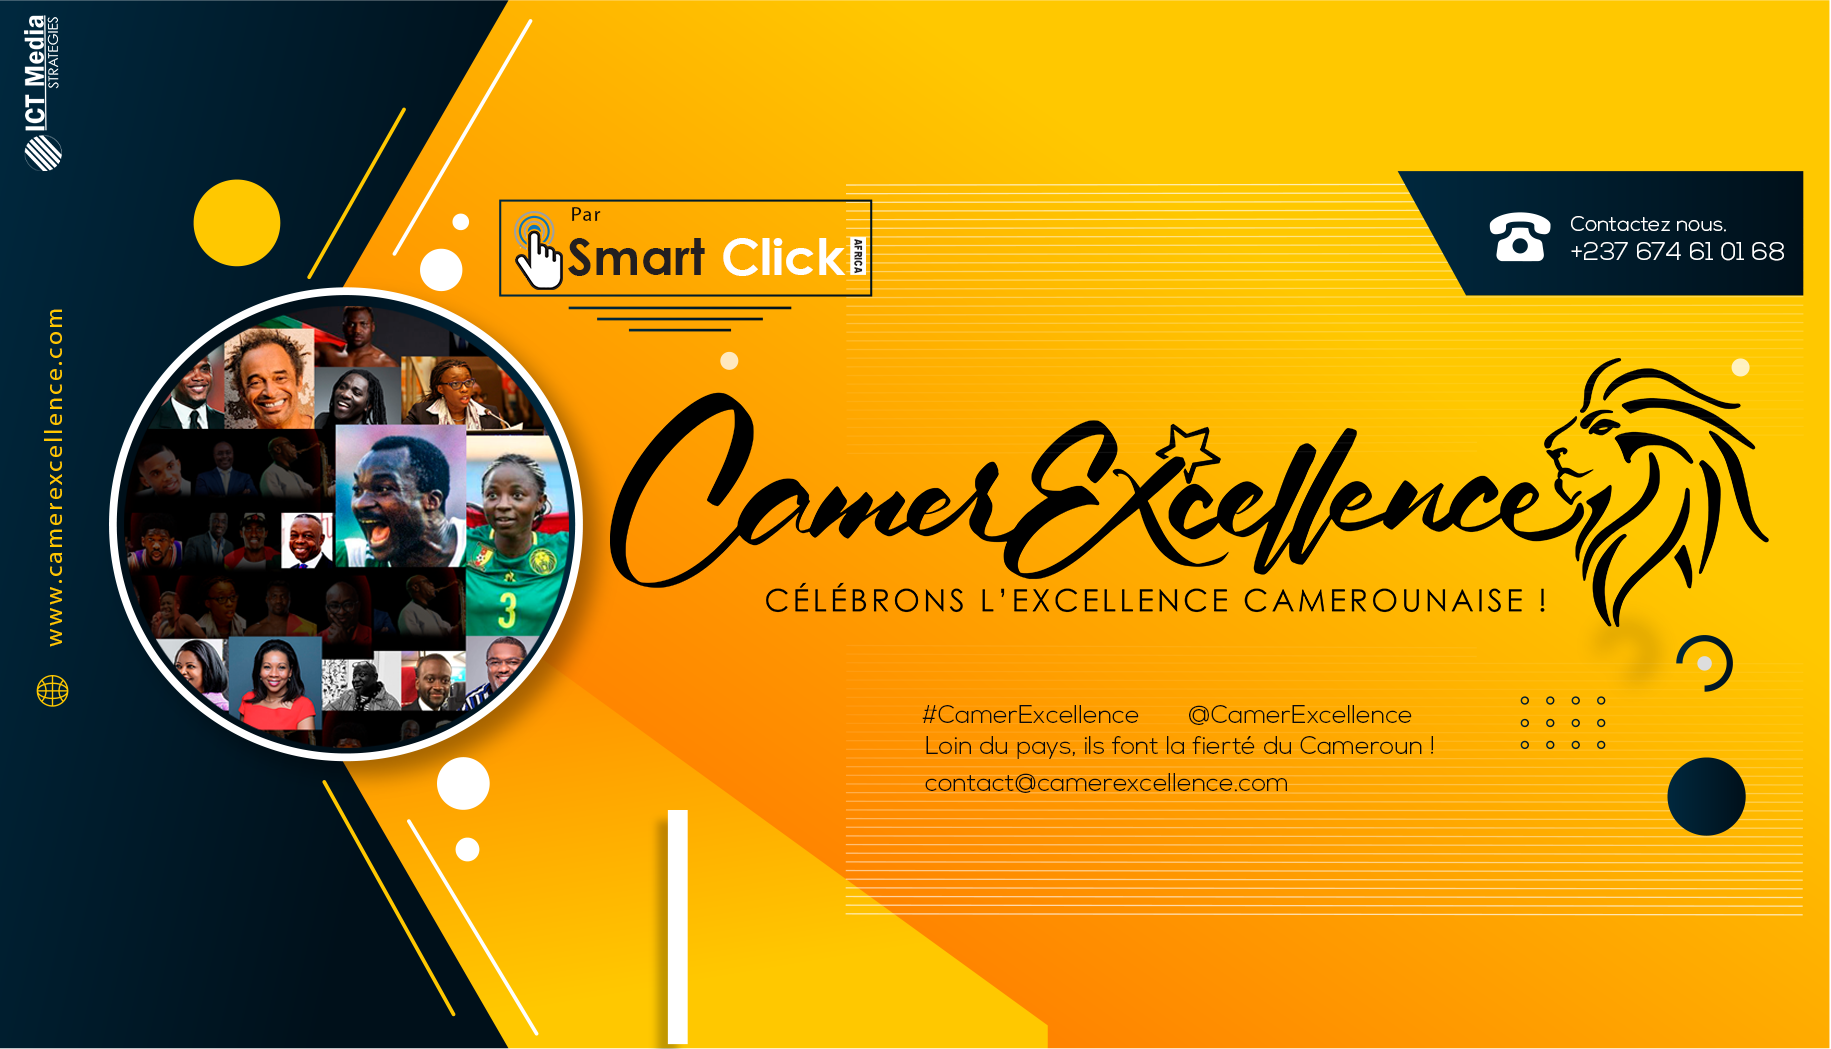 Smart Click Africa lance le concept CamerExcellence pour célébrer les talents camerounais qui excellent à l’international